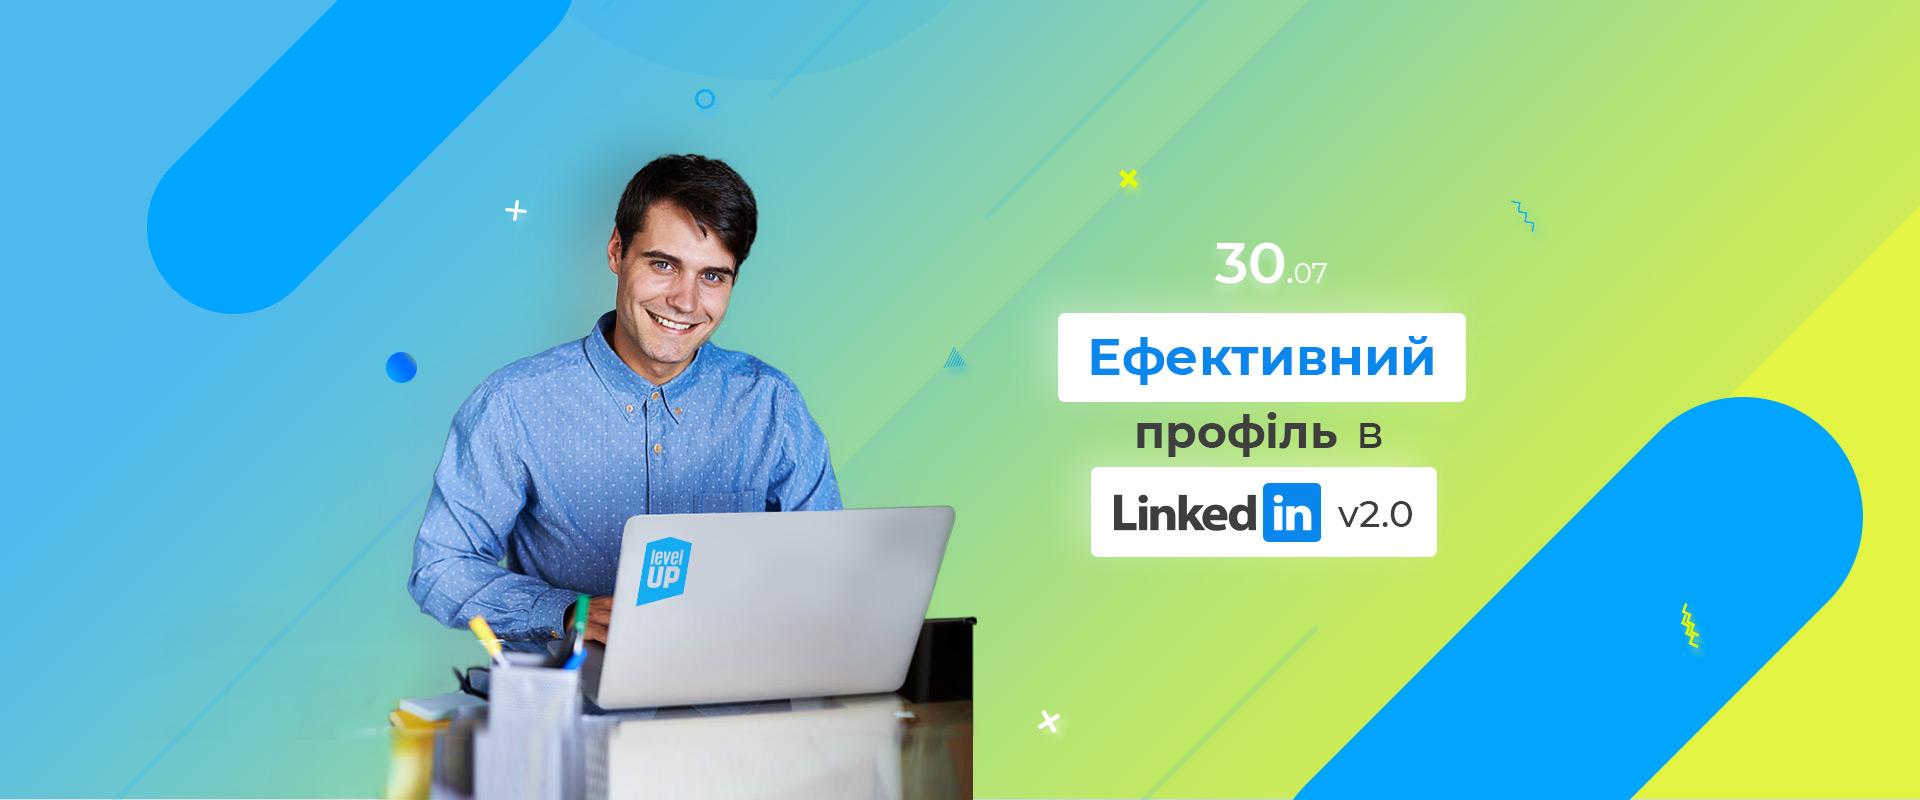 Workshop "Эффективный профиль в LinkedIn" ver. 2.0